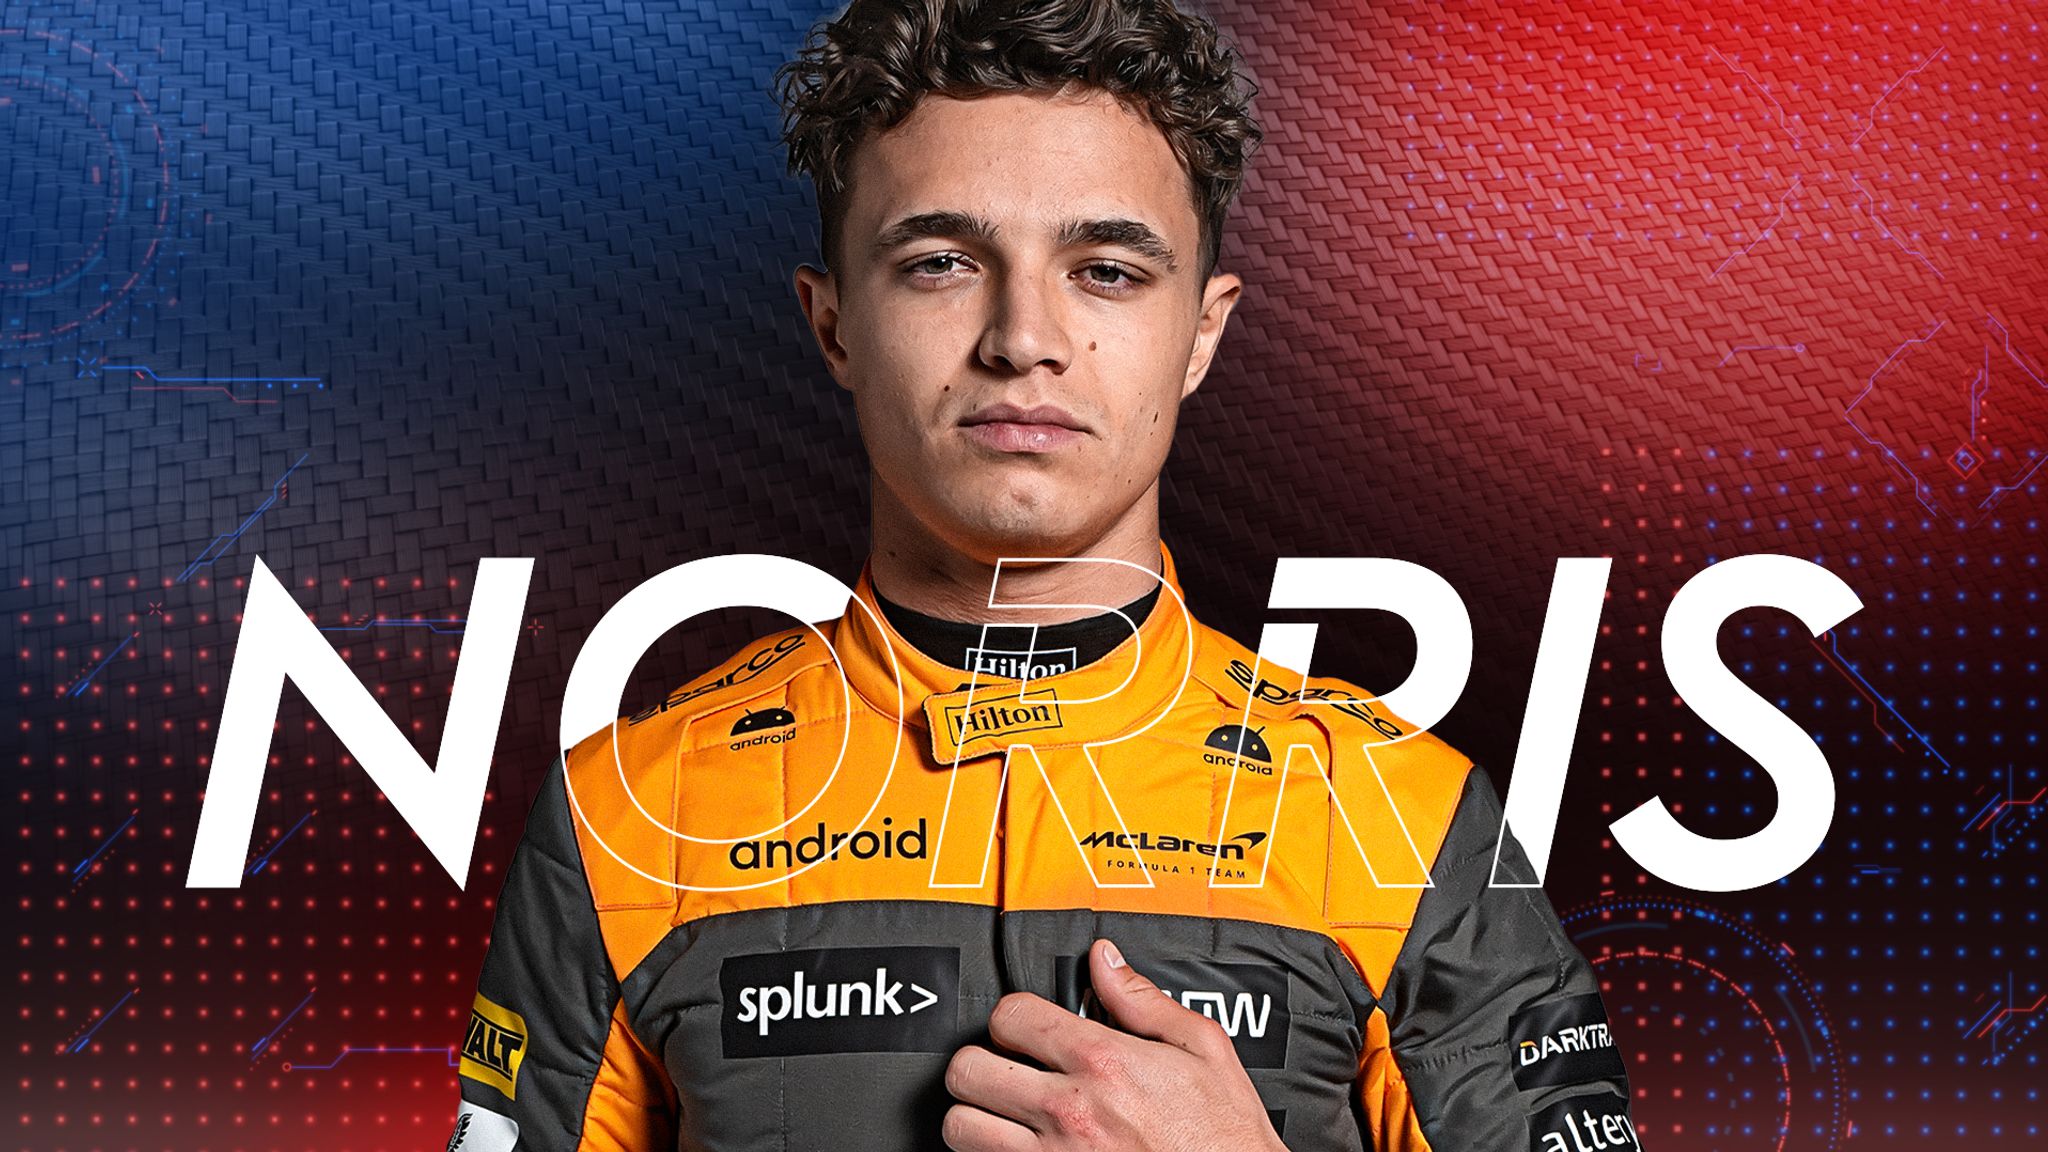 Lando Norris extends contract with McLaren beyond 2025